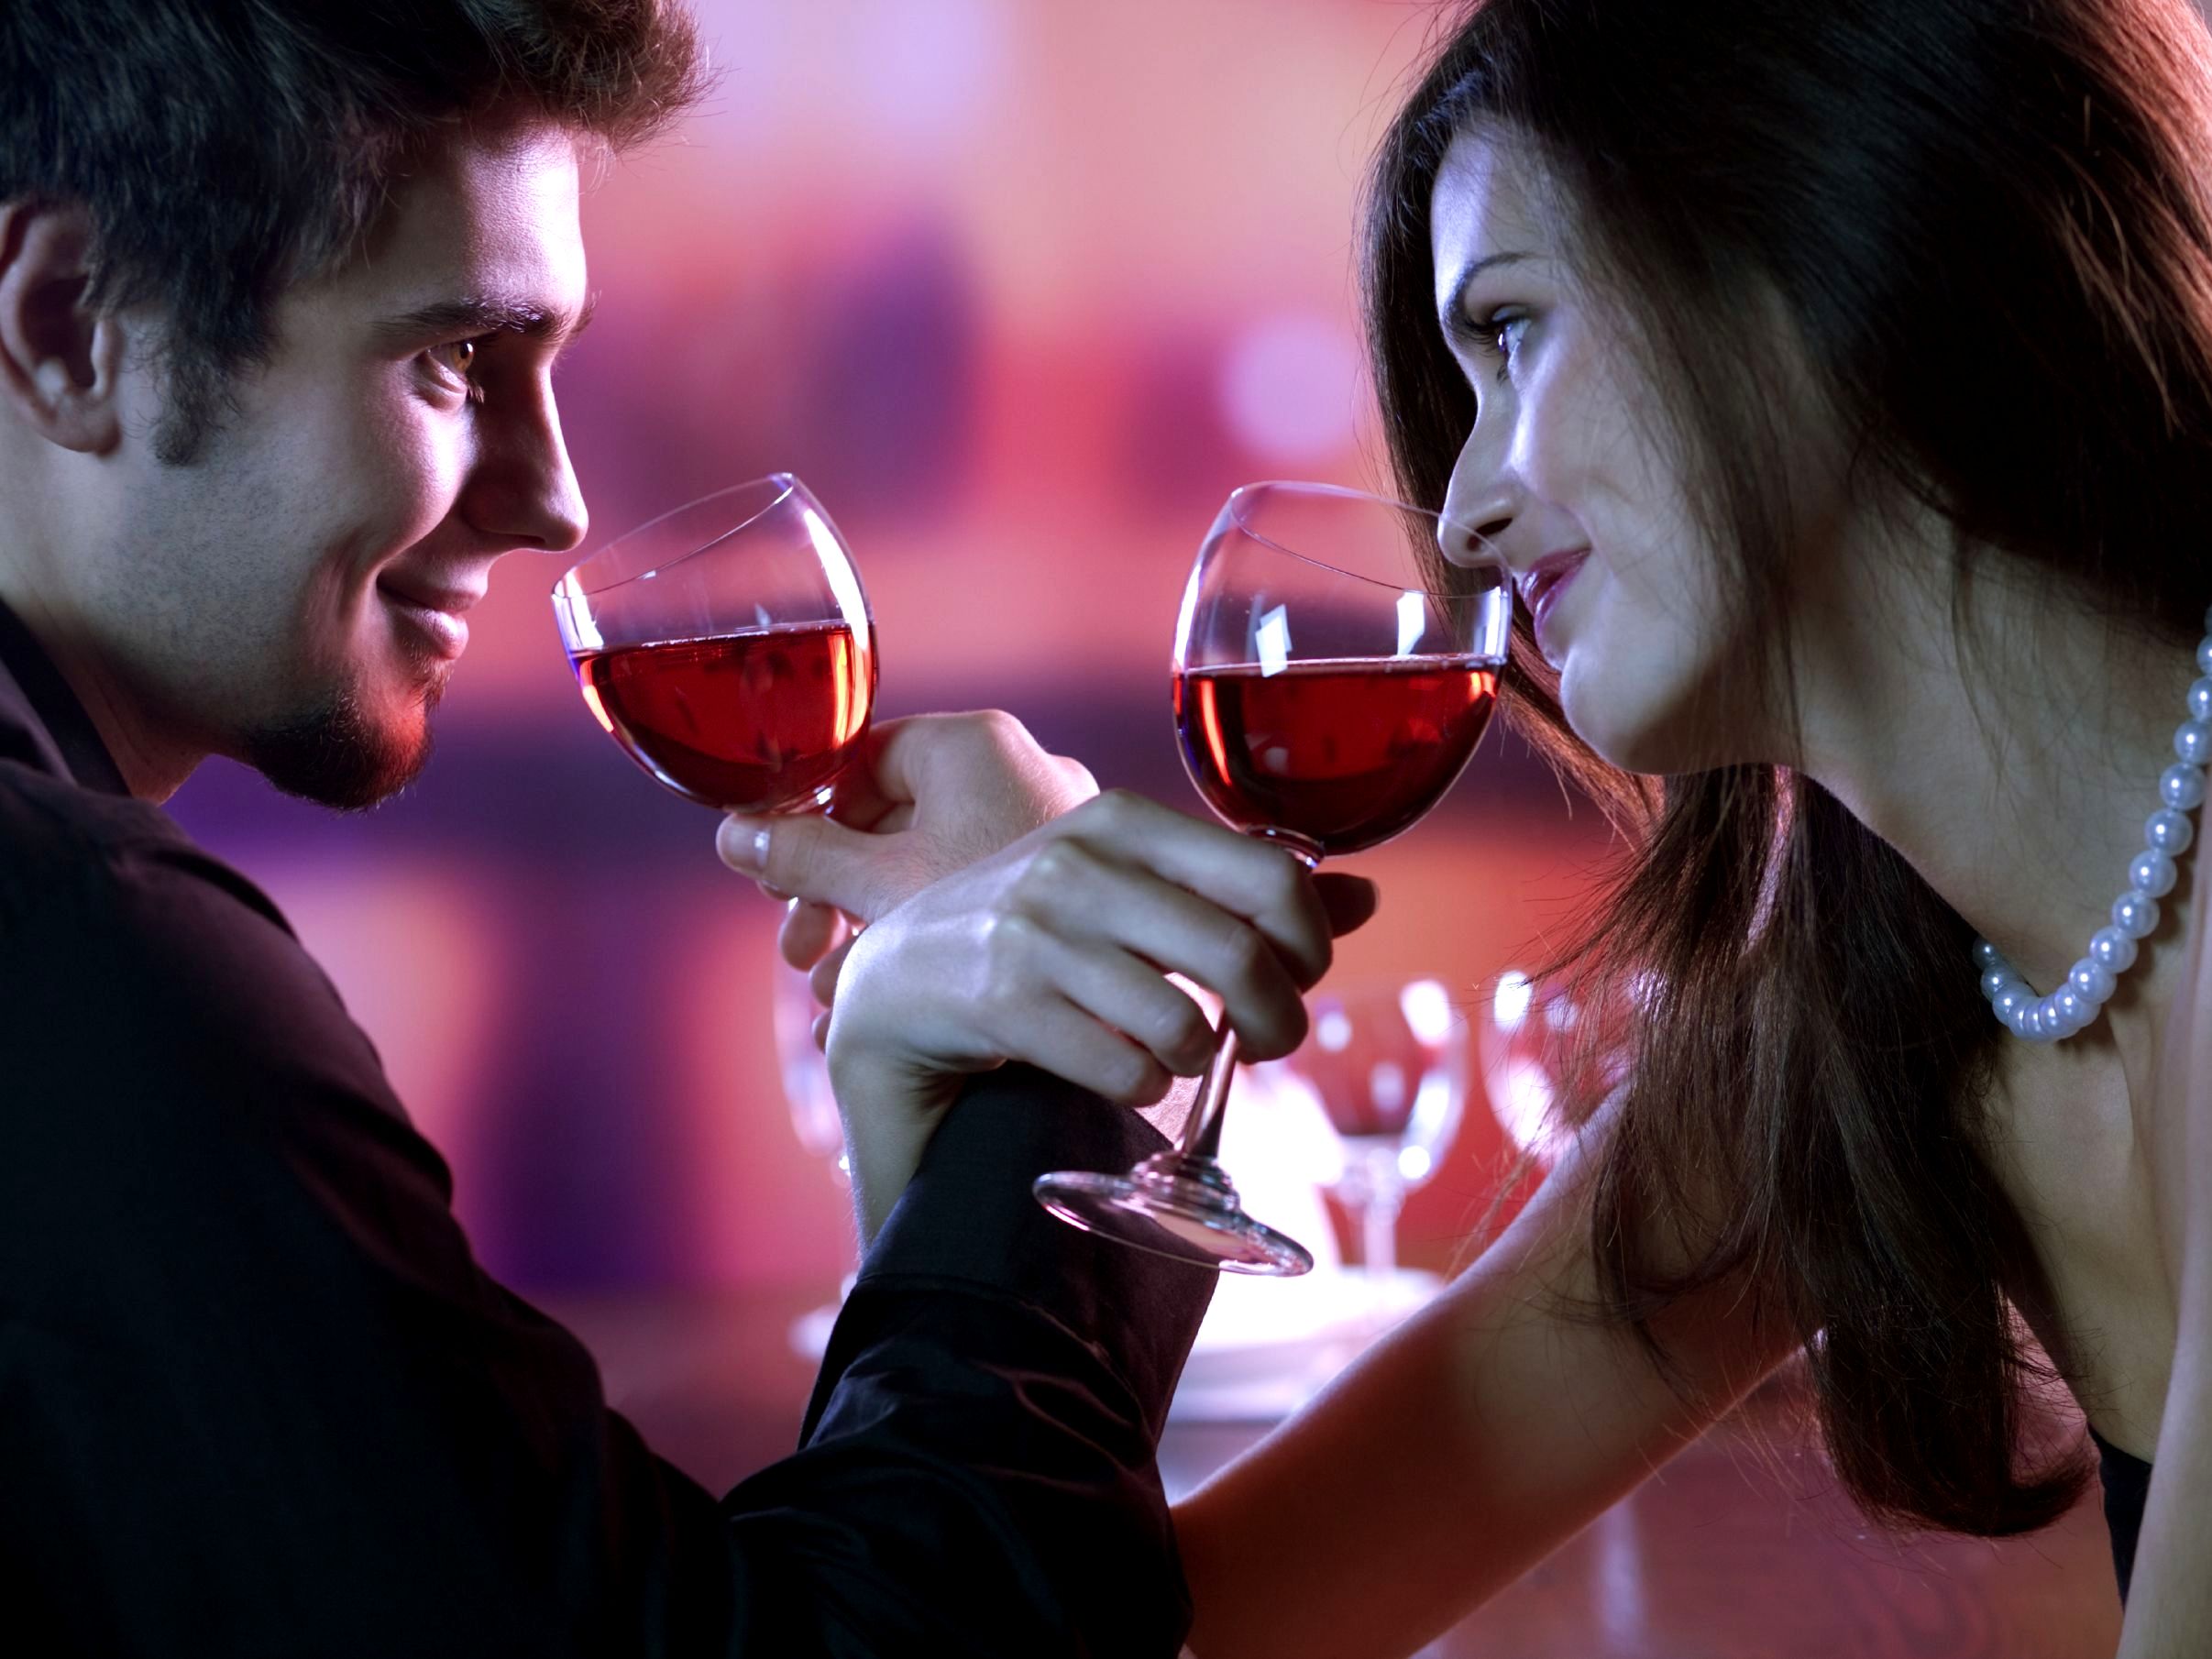 Вдвоем веселее песня. Романтическое свидание. Романтический вечер с вином. Романтичный вечер. Влюбленные вино.